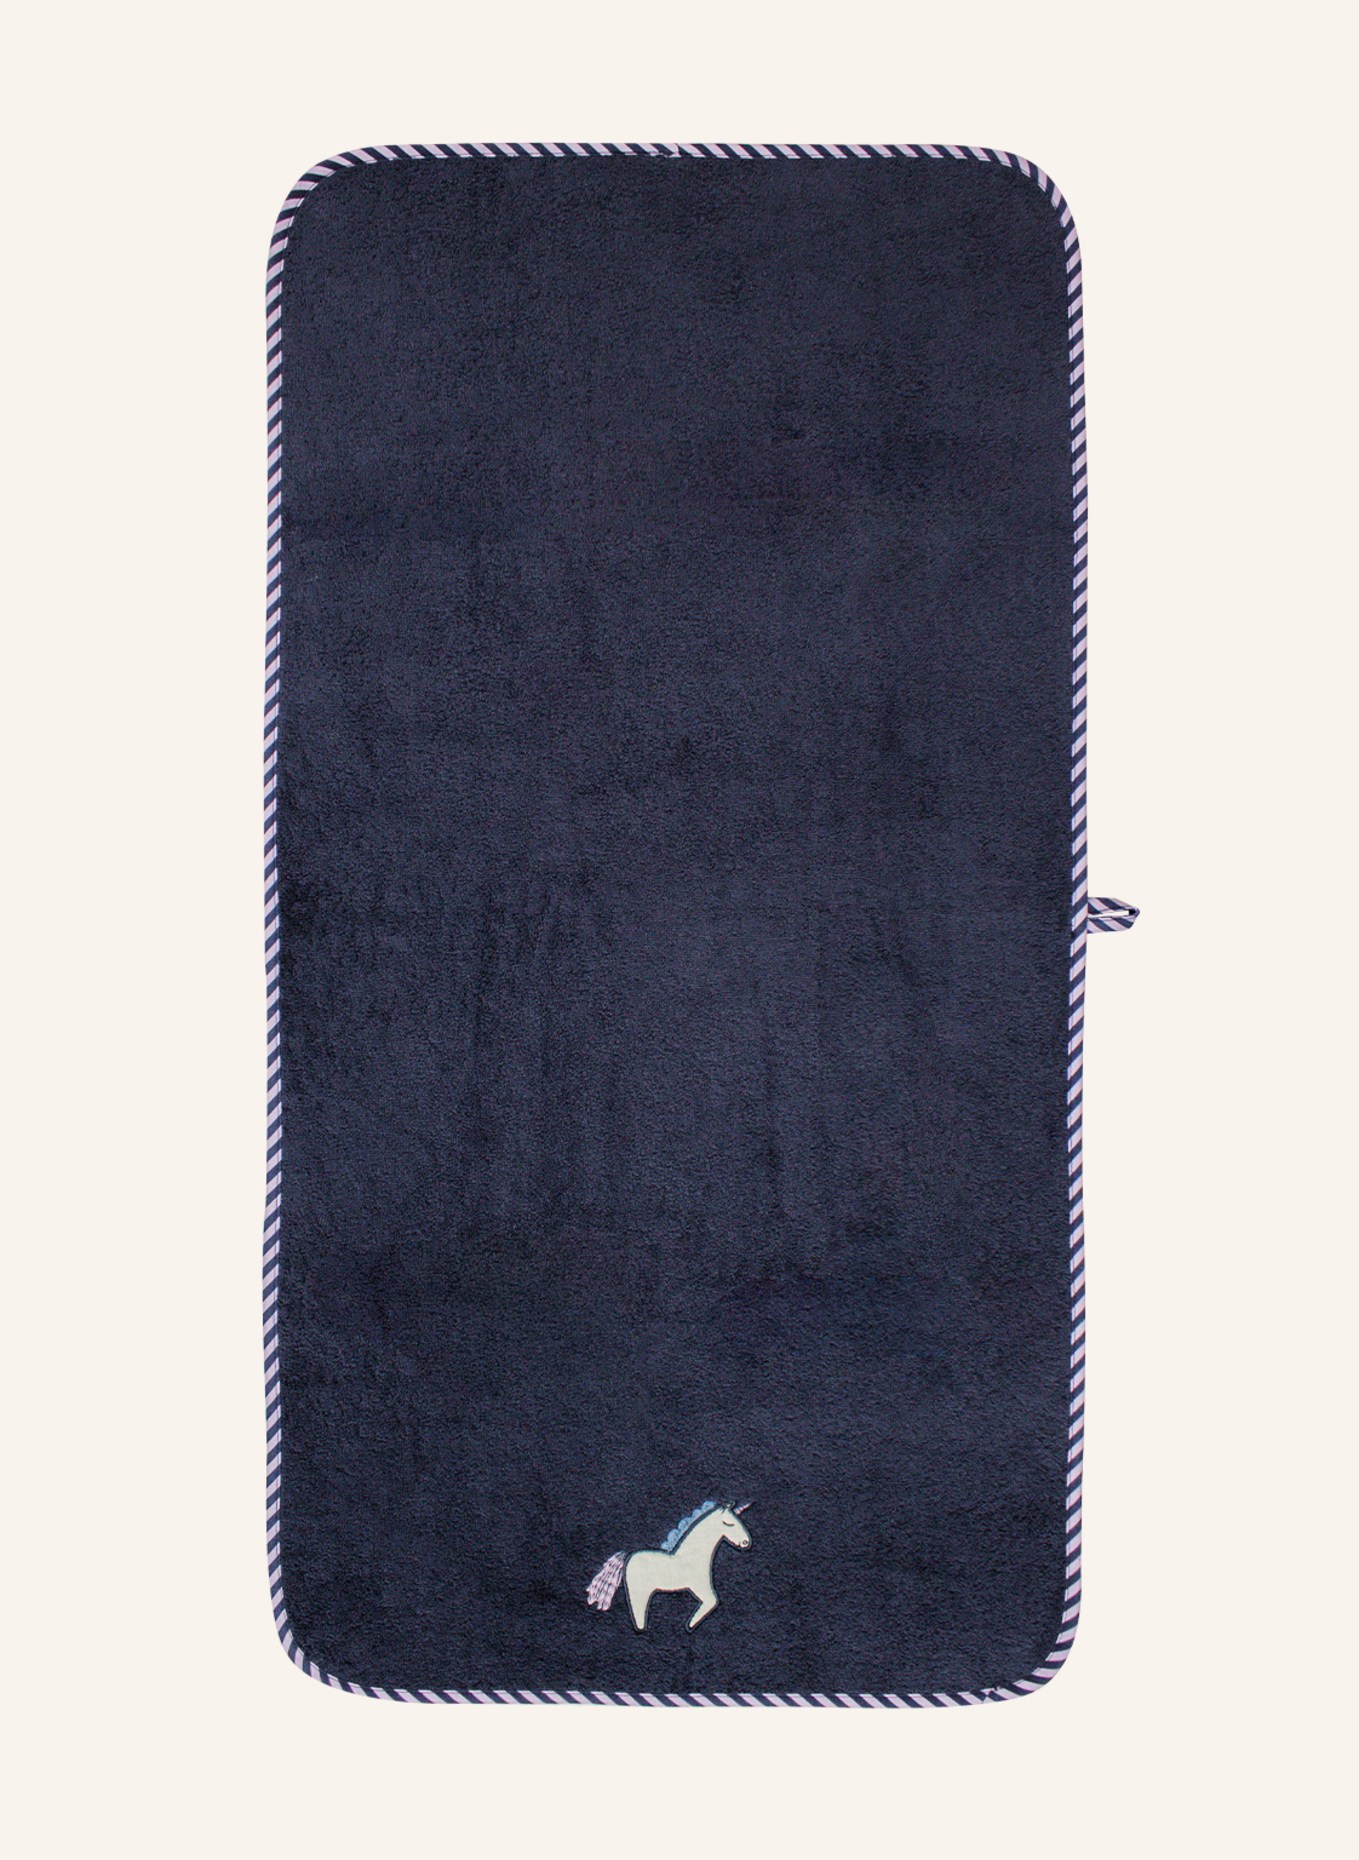 KATHA Covers Handtuch EINHORN, Farbe: BLAU (Bild 1)